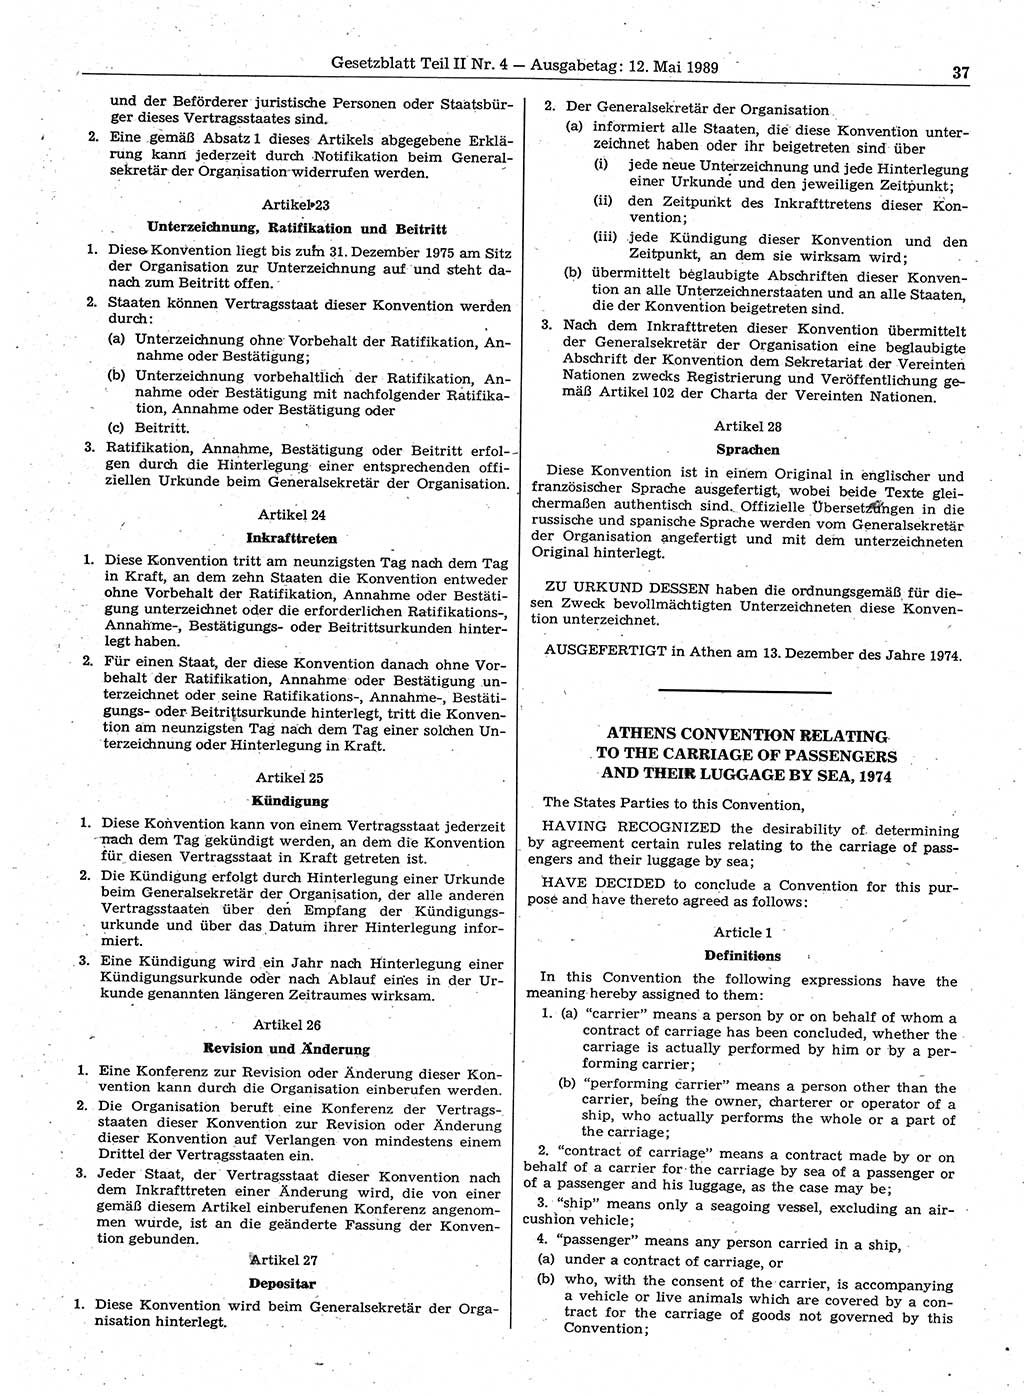 Gesetzblatt (GBl.) der Deutschen Demokratischen Republik (DDR) Teil ⅠⅠ 1989, Seite 37 (GBl. DDR ⅠⅠ 1989, S. 37)